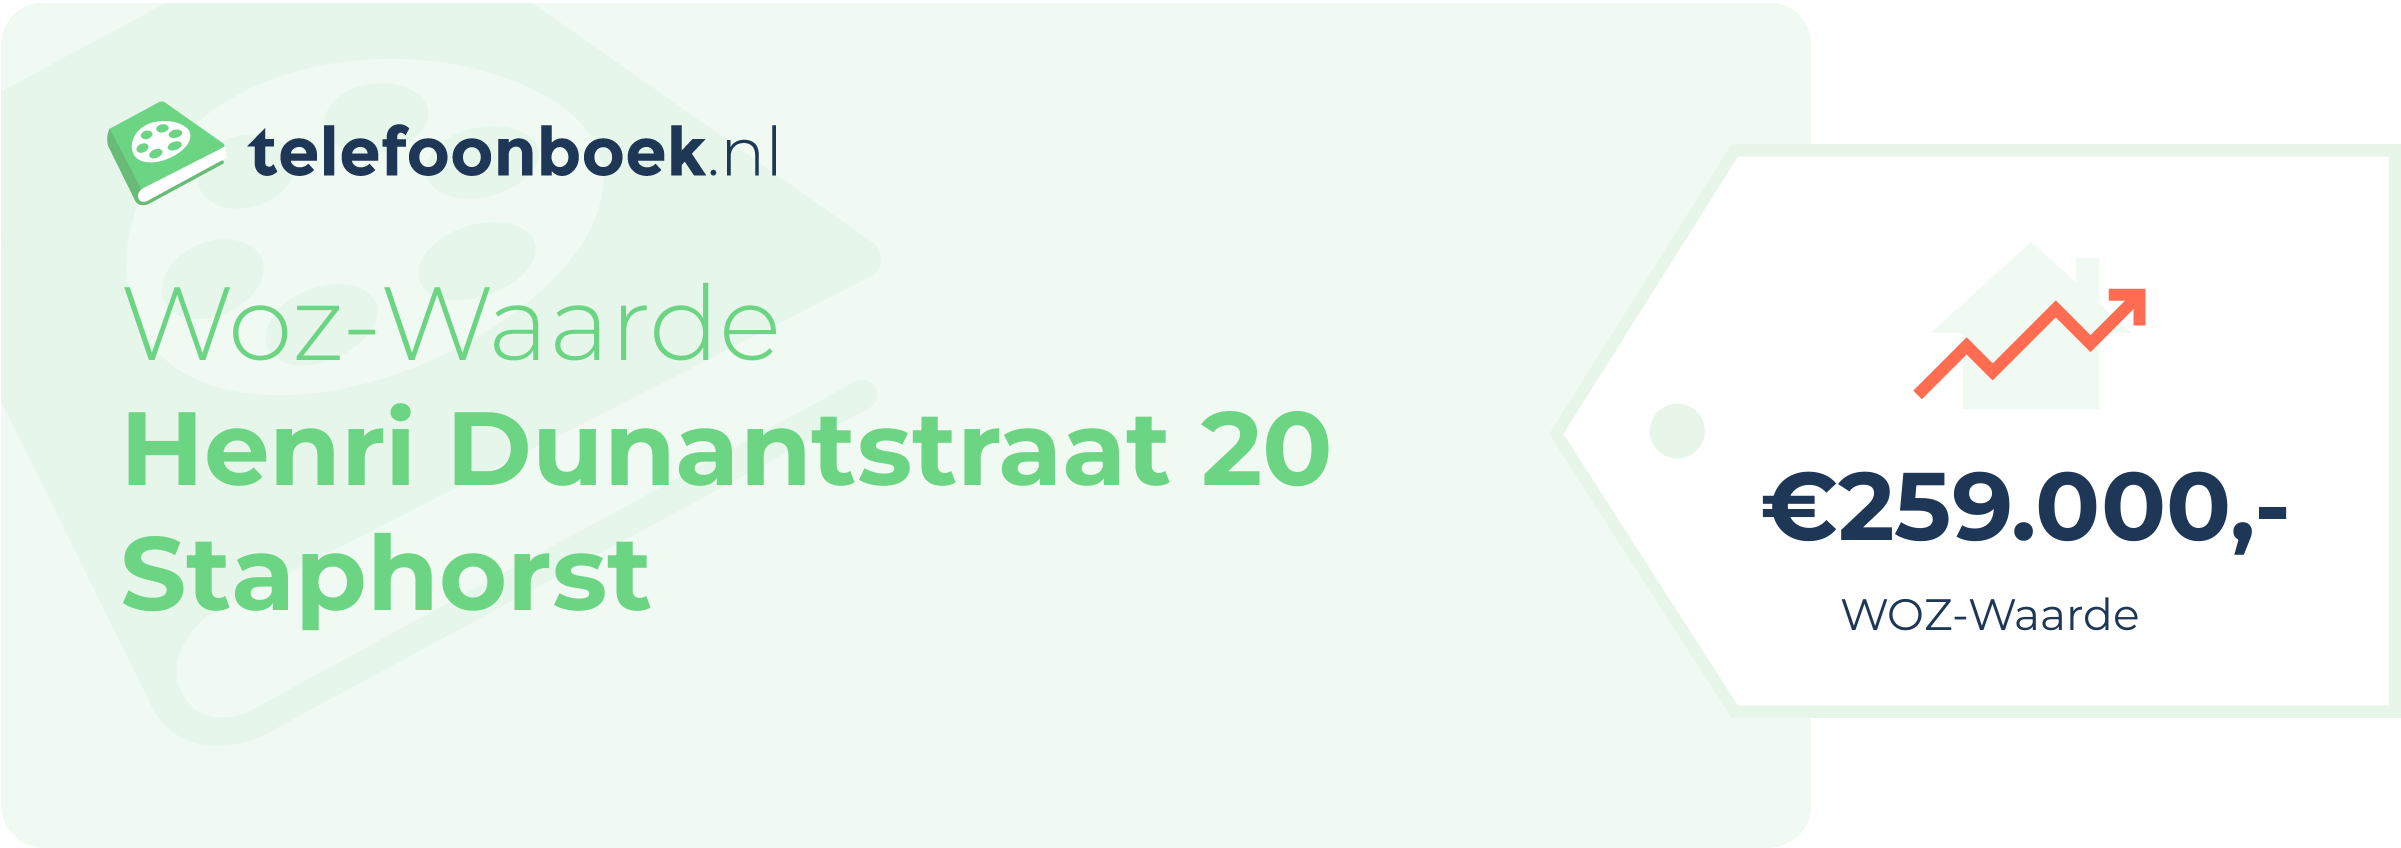 WOZ-waarde Henri Dunantstraat 20 Staphorst